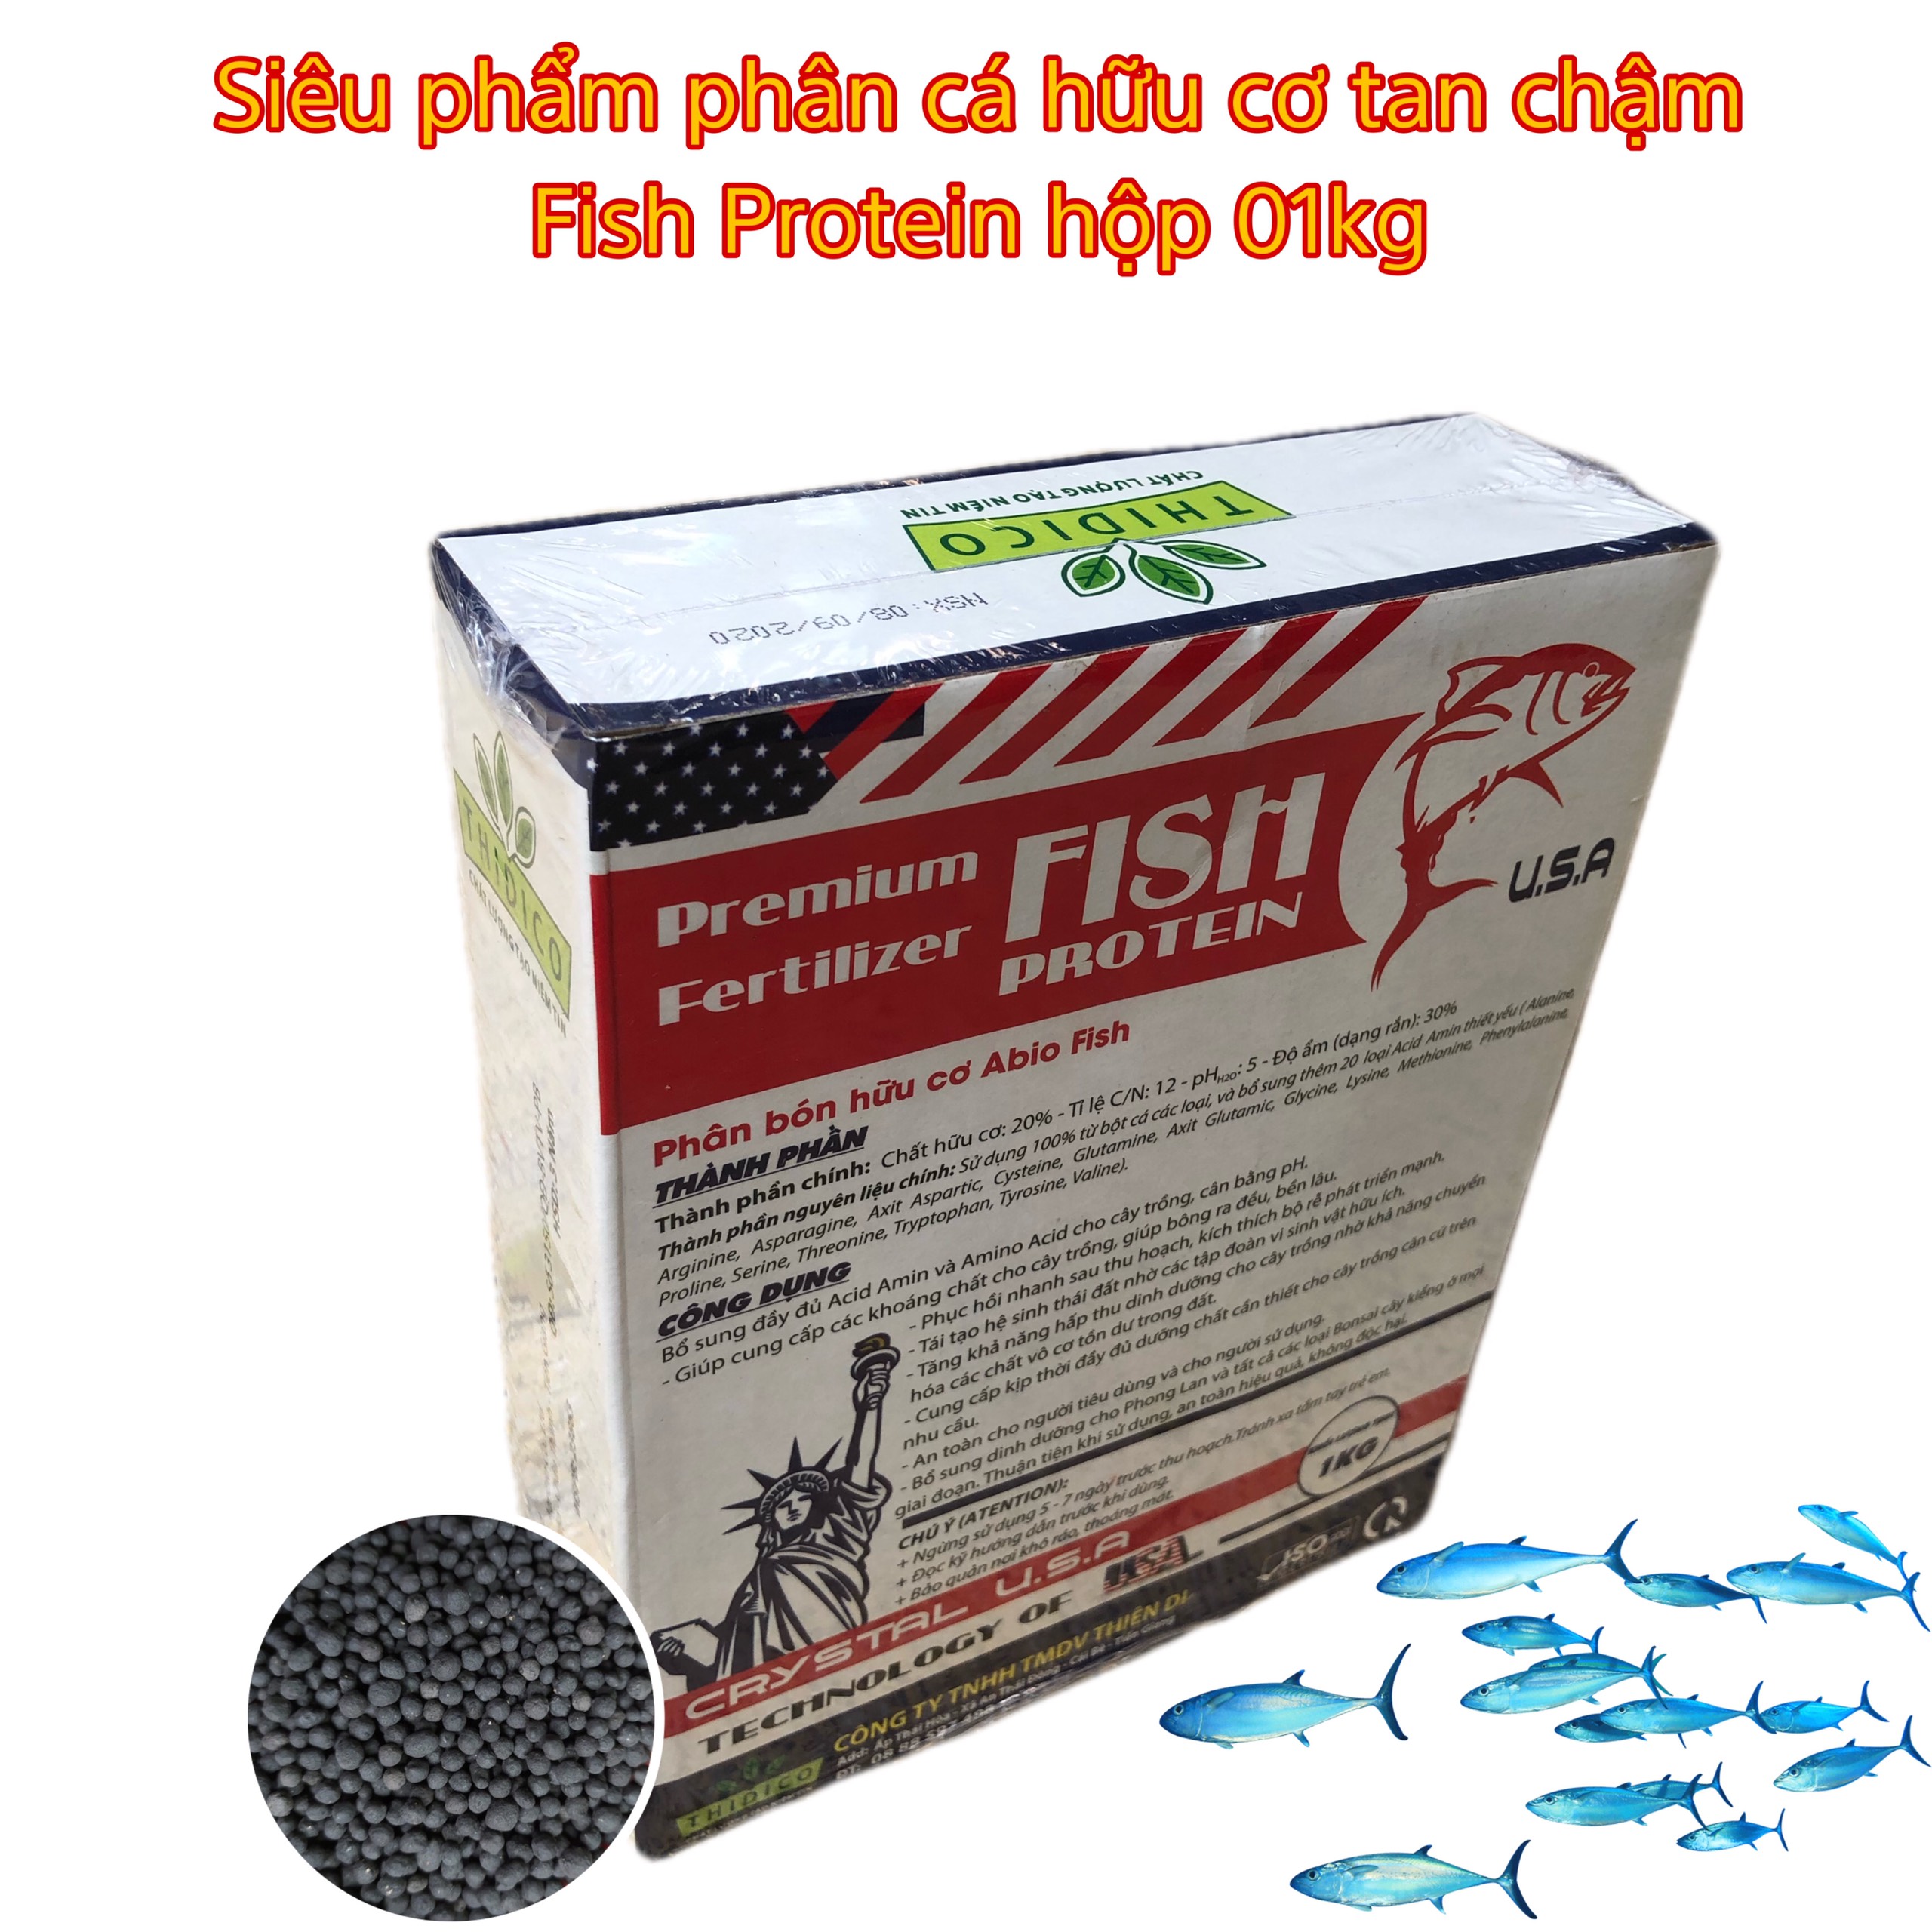 phân cá hữu cơ tan chậm nhập khẩu Mỹ- Fish Protein - 1kg - viên đen